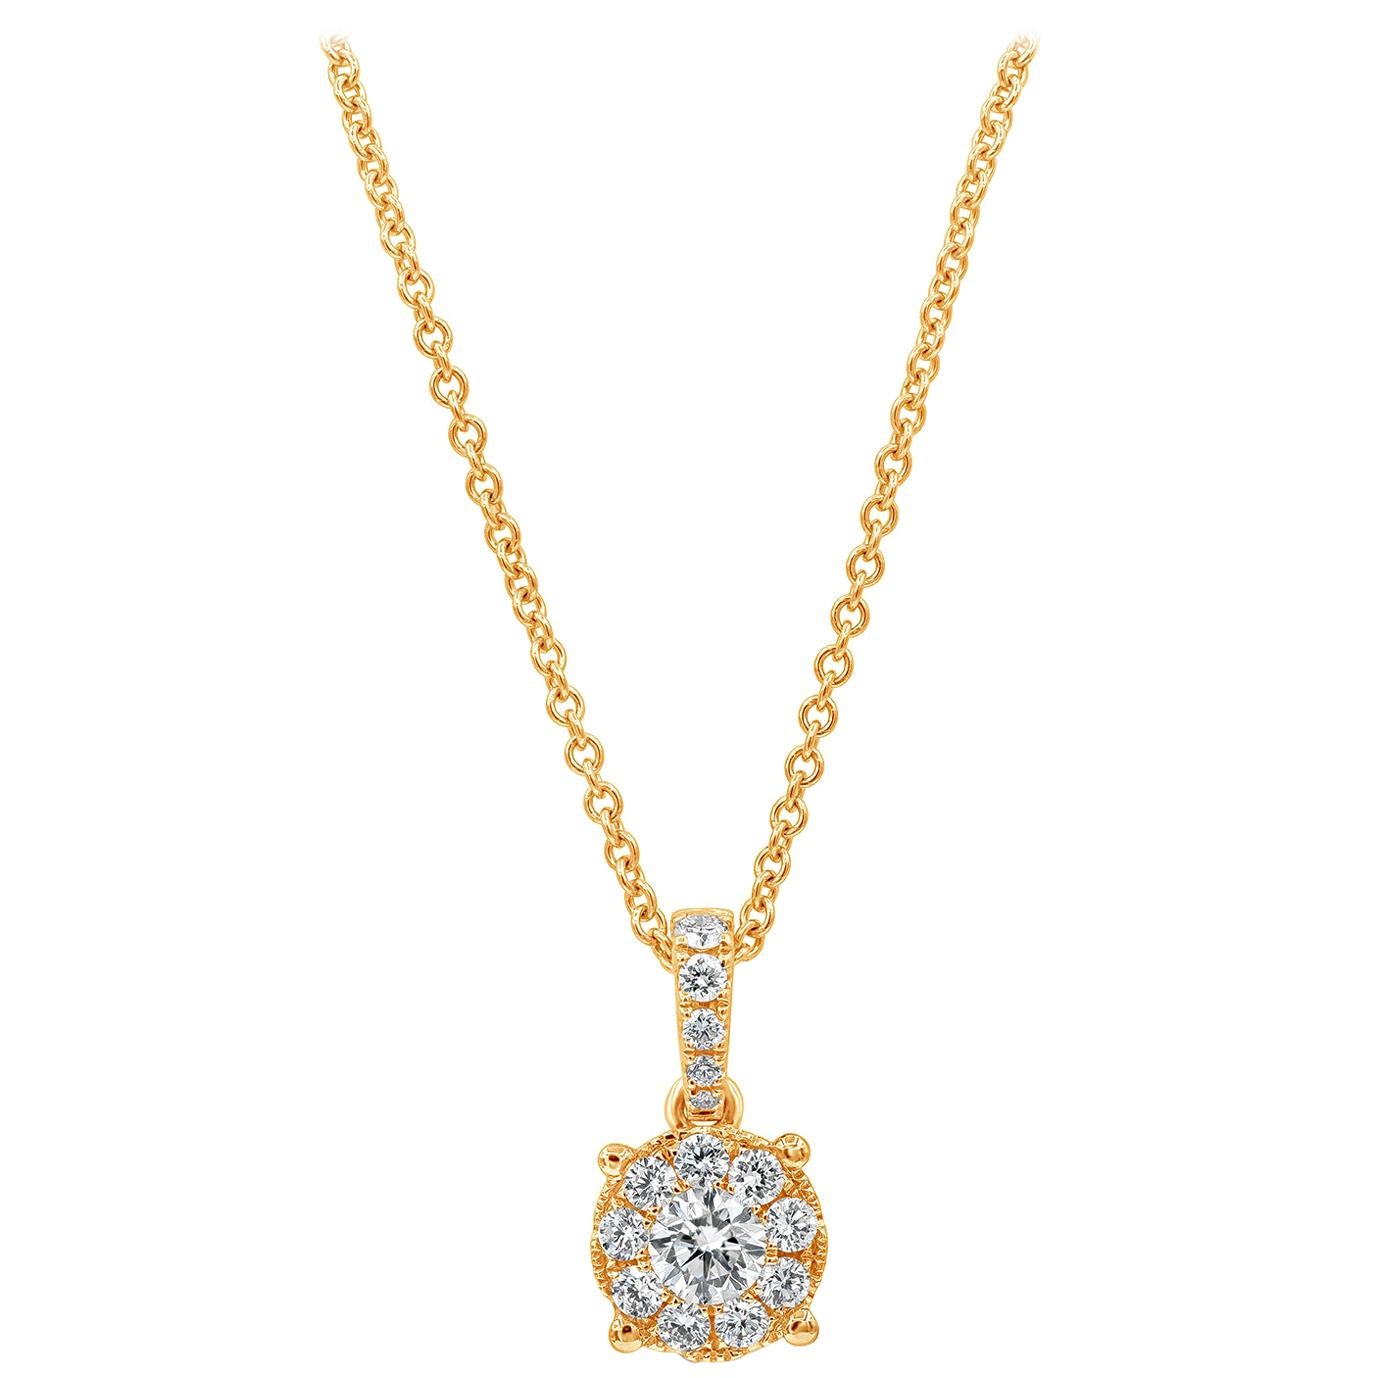 Roman Malakov, collier pendentif en grappe de diamants ronds brillants de 0,48 carat au total